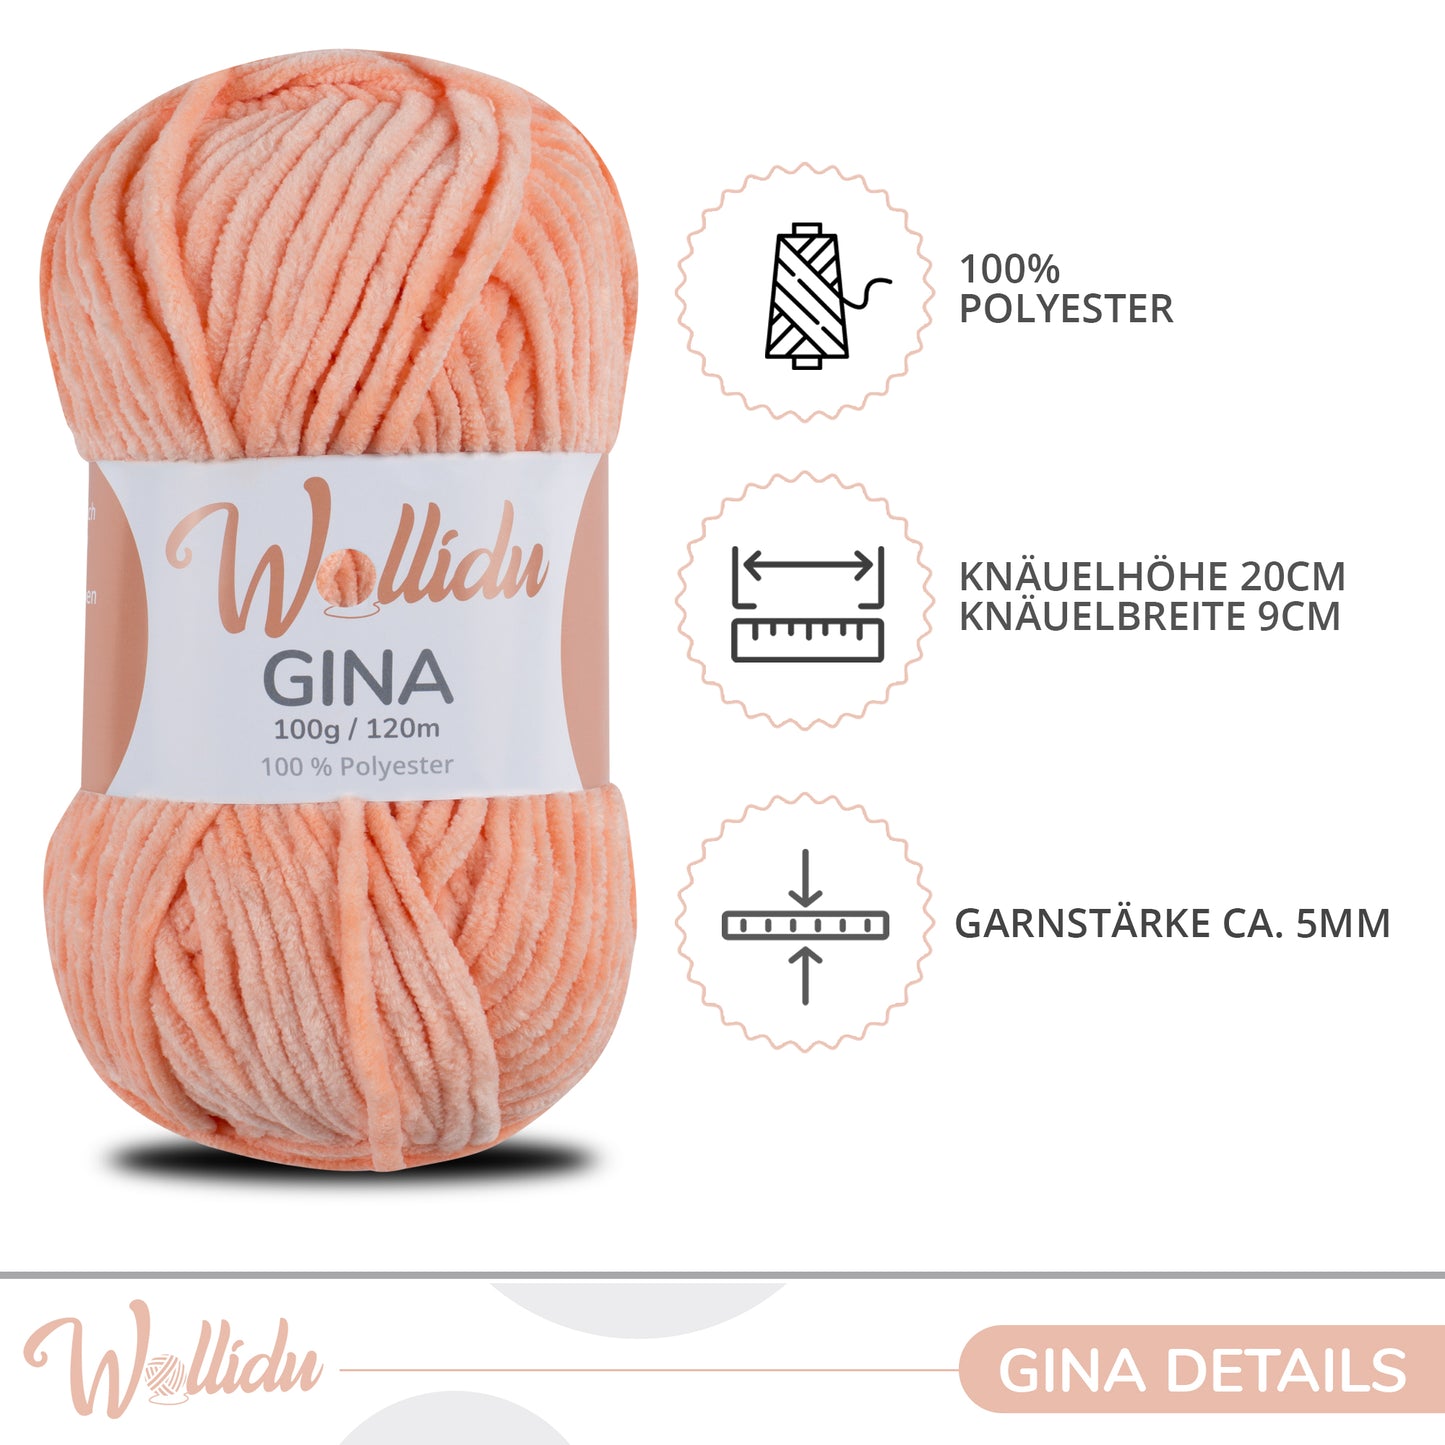 Wollidu Gina 100% Polyester 5 x 100g/120m - Lachs